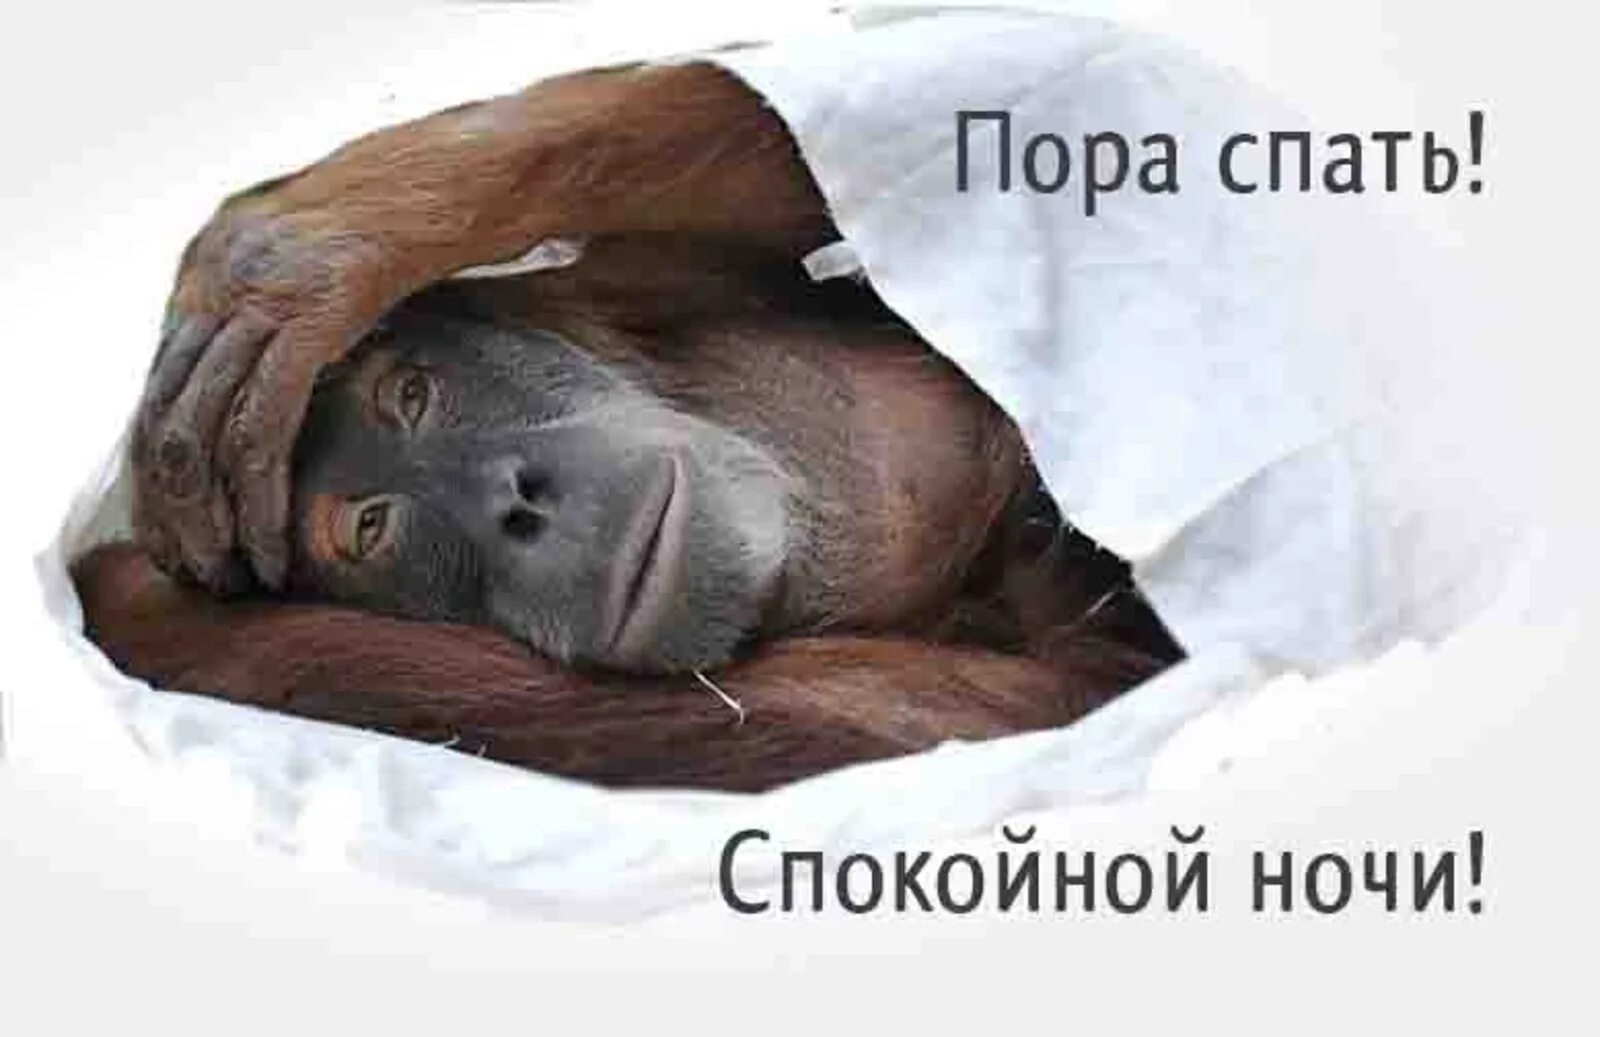 Тихо русские спят. Спокойной ночи обезьянка. Обезьянка желает спокойной ночи. Пора спать!. Спокойной ночи мартышка.